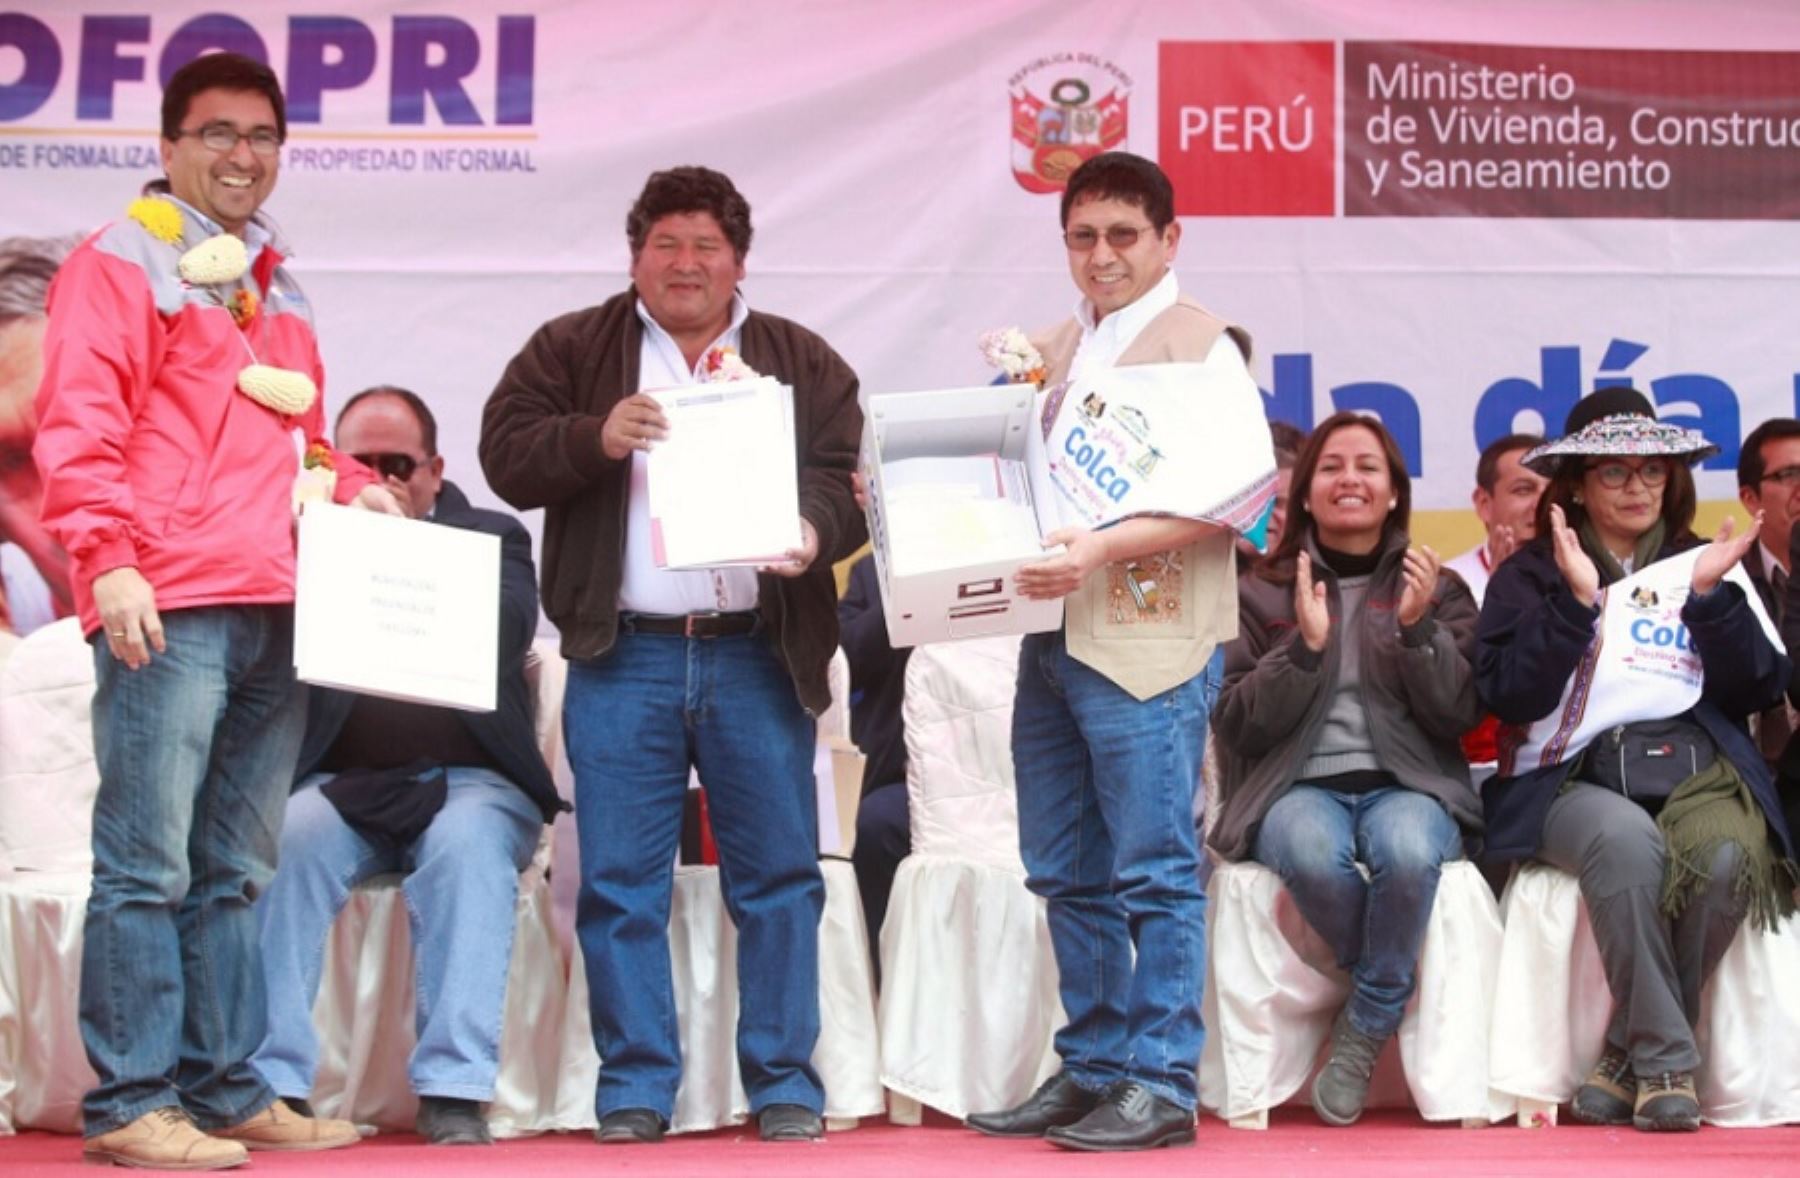 Ministro de Vivienda, Construcción y Saneamiento, Edmer Trujillo Mori, entrega títulos de propiedad a pobladores de la provincia arequipeña de Caylloma.